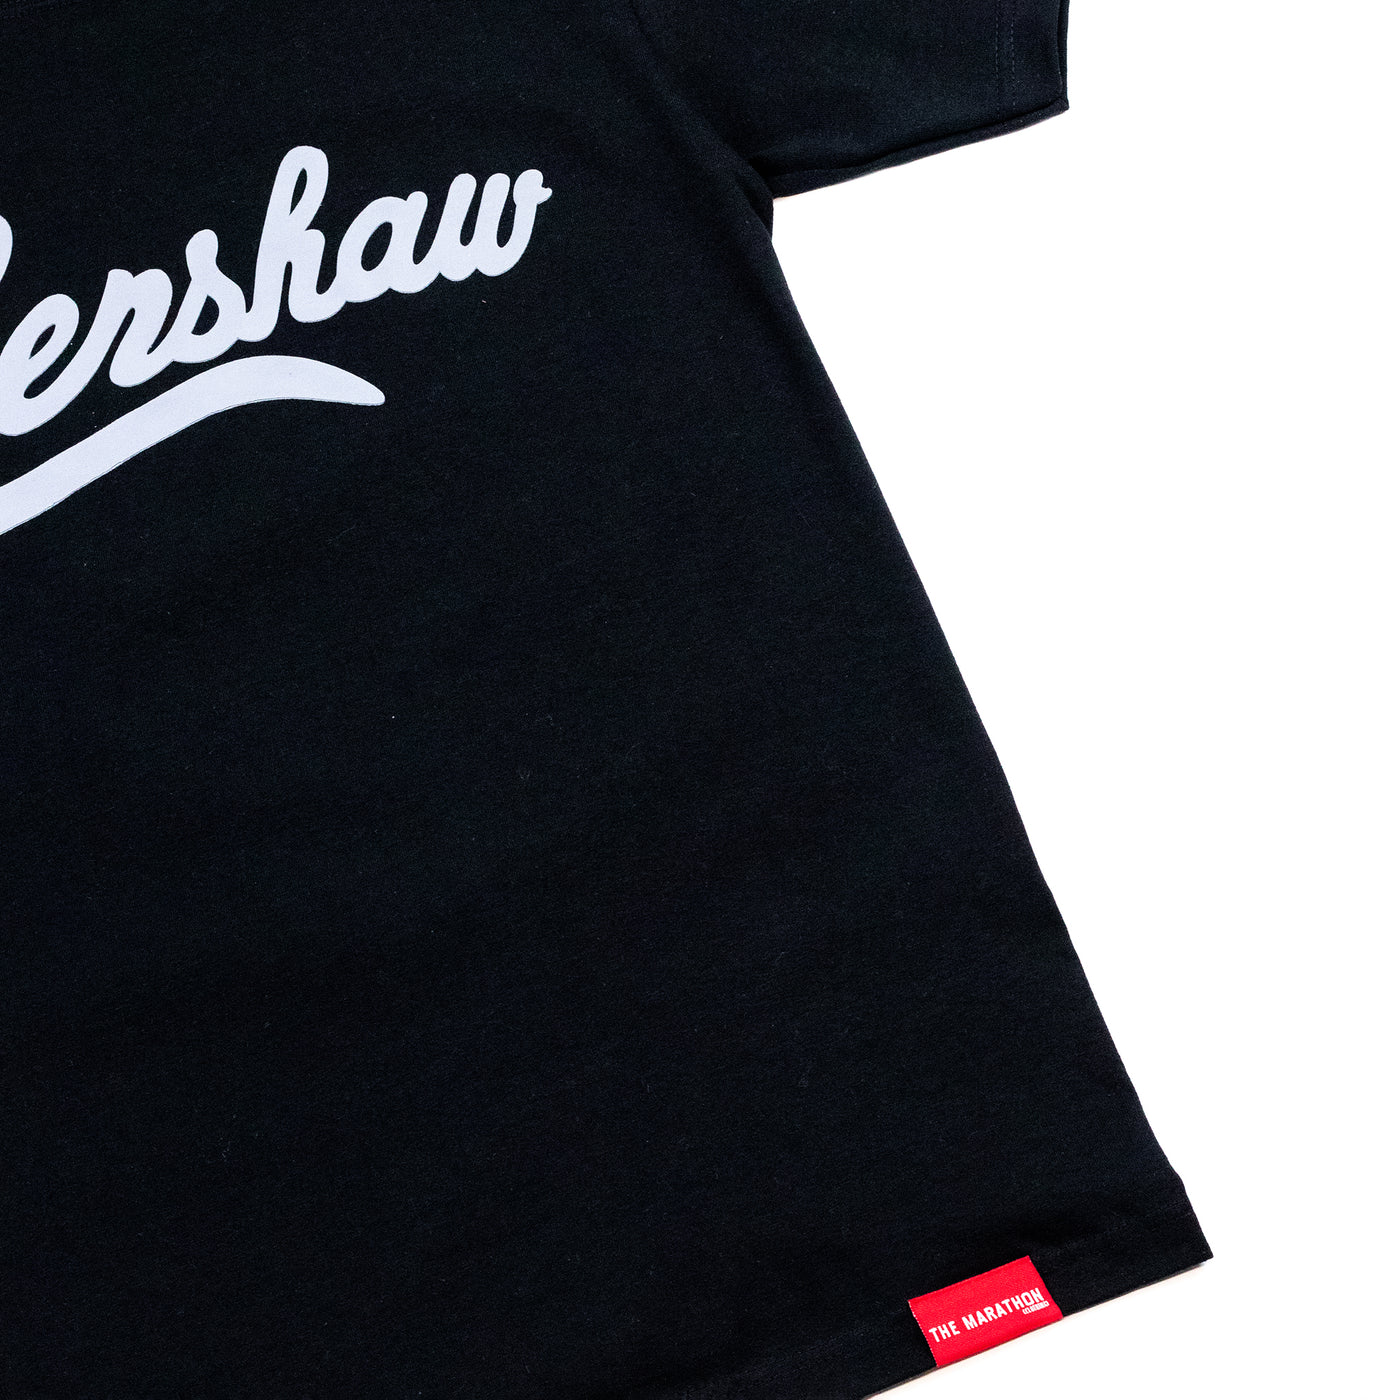 Crenshaw T-Shirt - Black/Grey - Detail 2